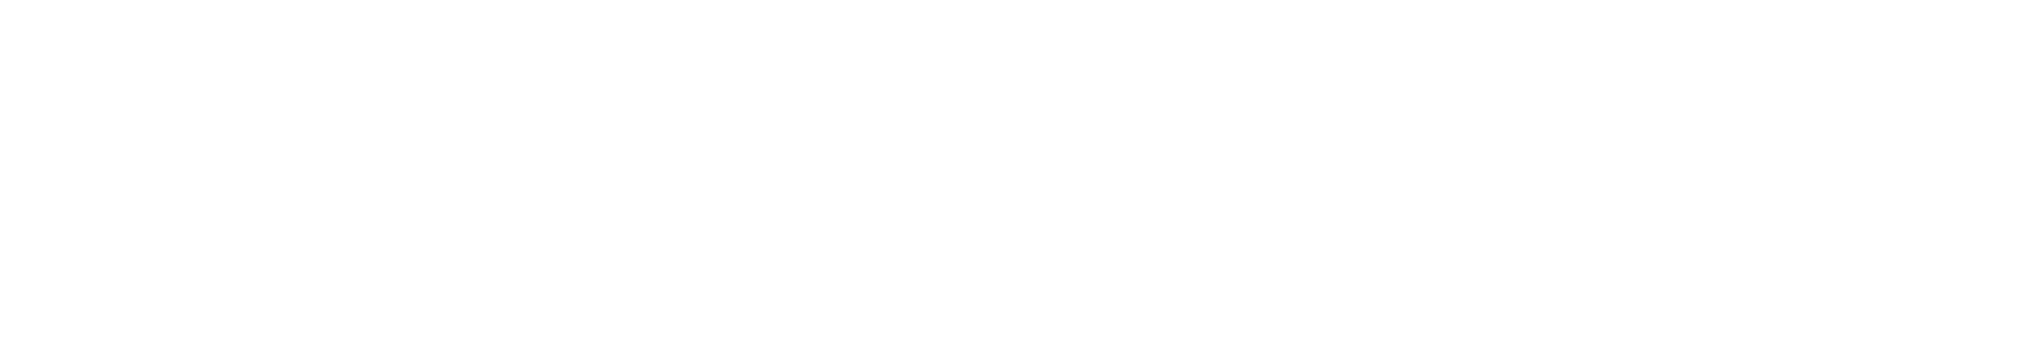 Loopfront-Logo-hvit-1